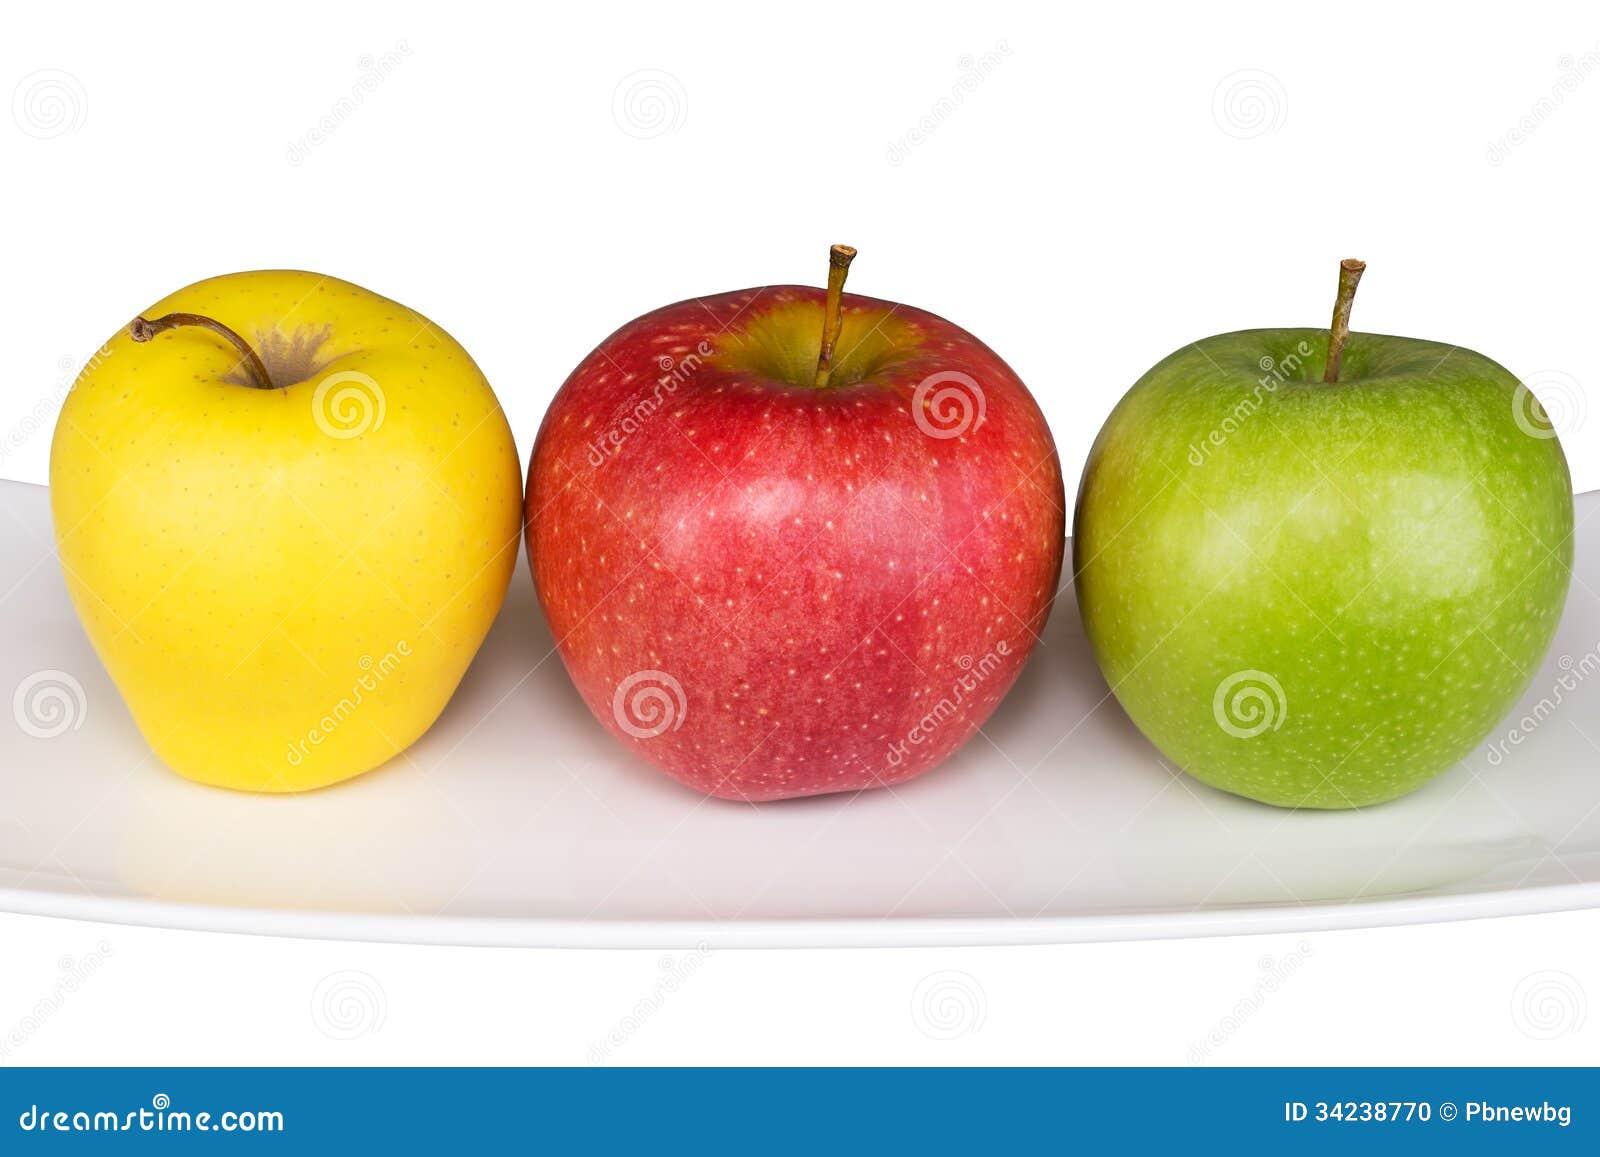 Включи 3 яблока. Яблоко красно желтое. Яблоки красные желтые зеленые. Три яблока. Зеленые яблоки желтым бочком.